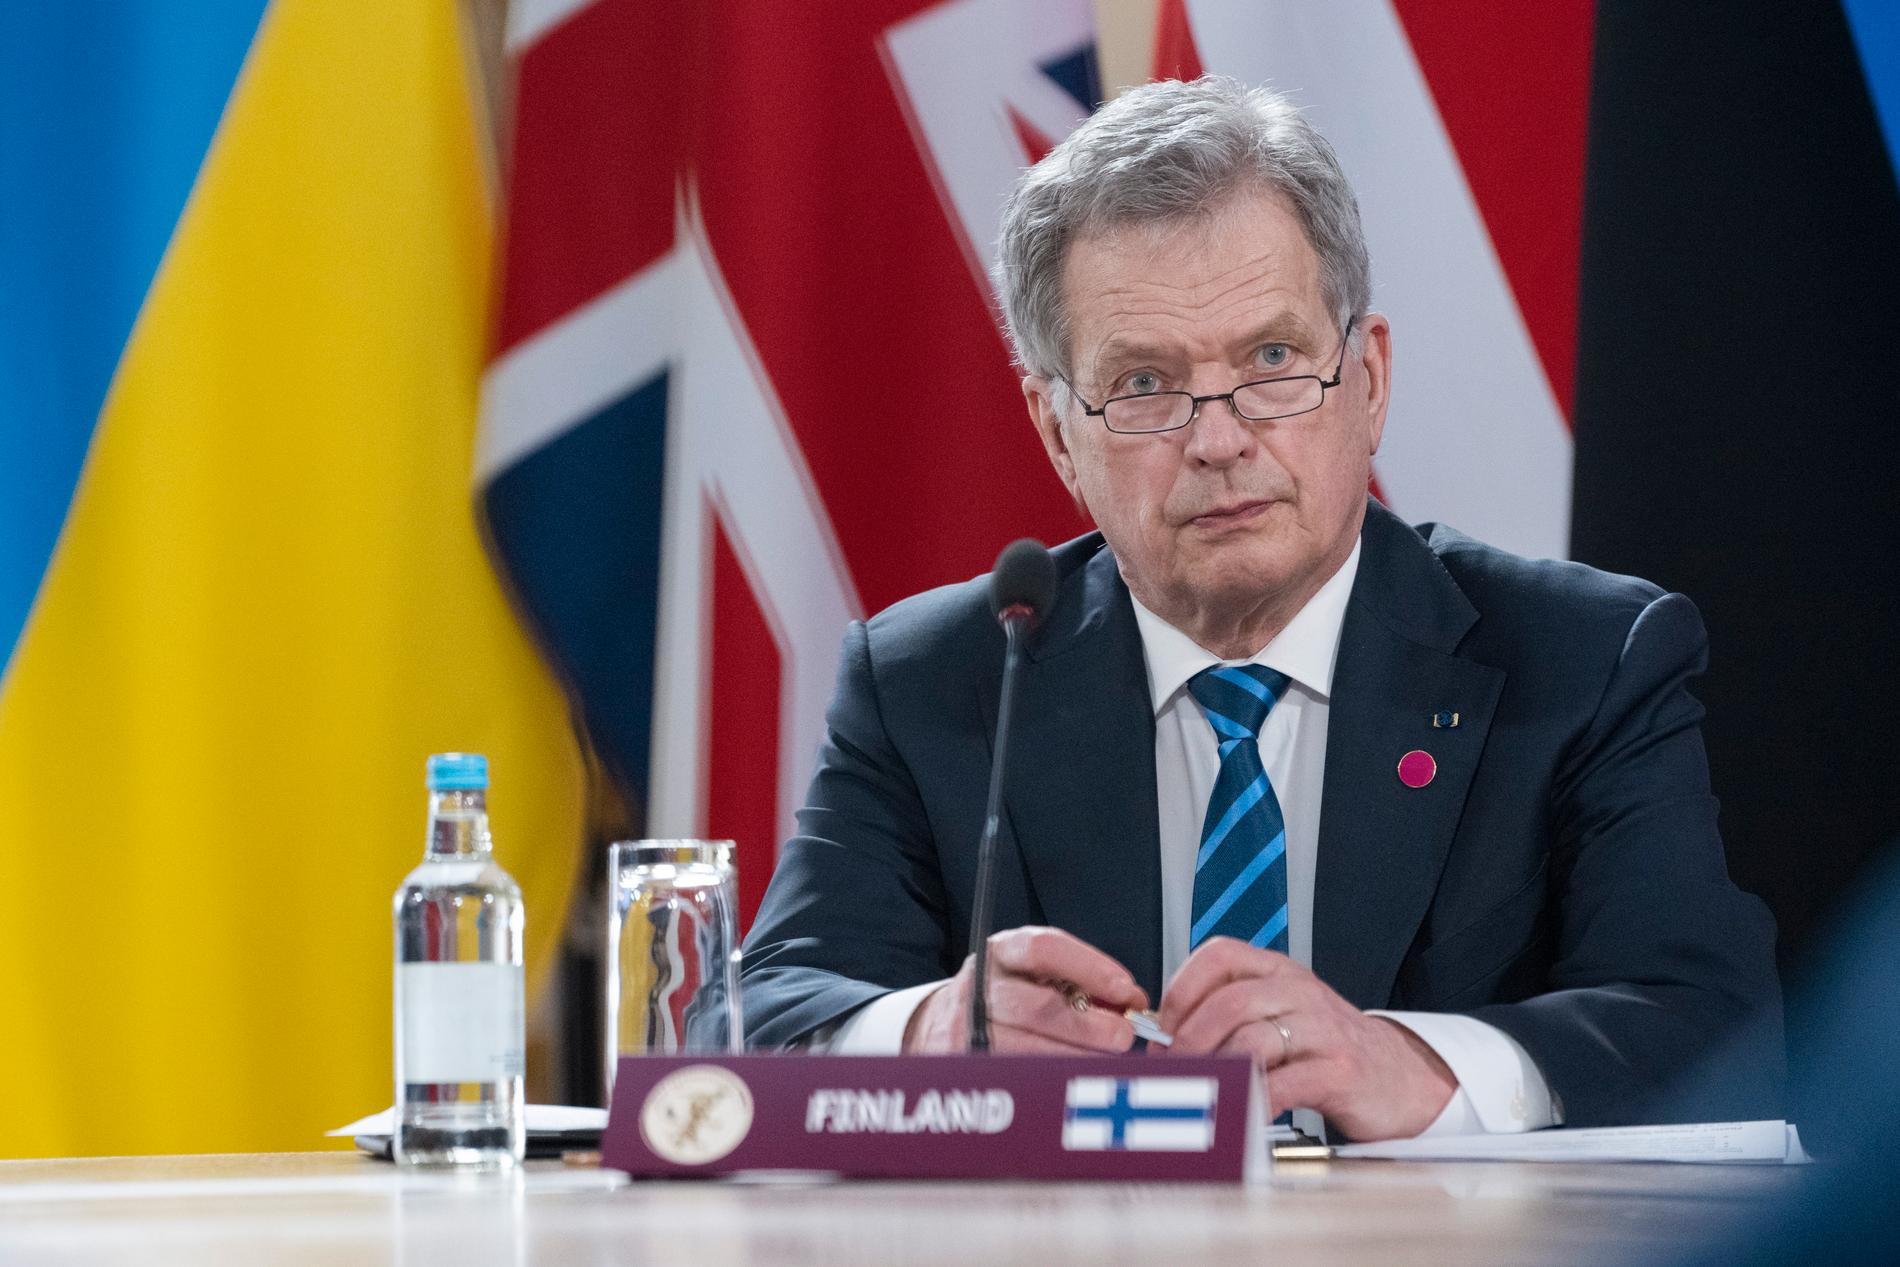 Sauli Niinistö har varit Finlands president sedan 2012 då han efterträdde Tarja Halonen. Bild från tidigare i vår.